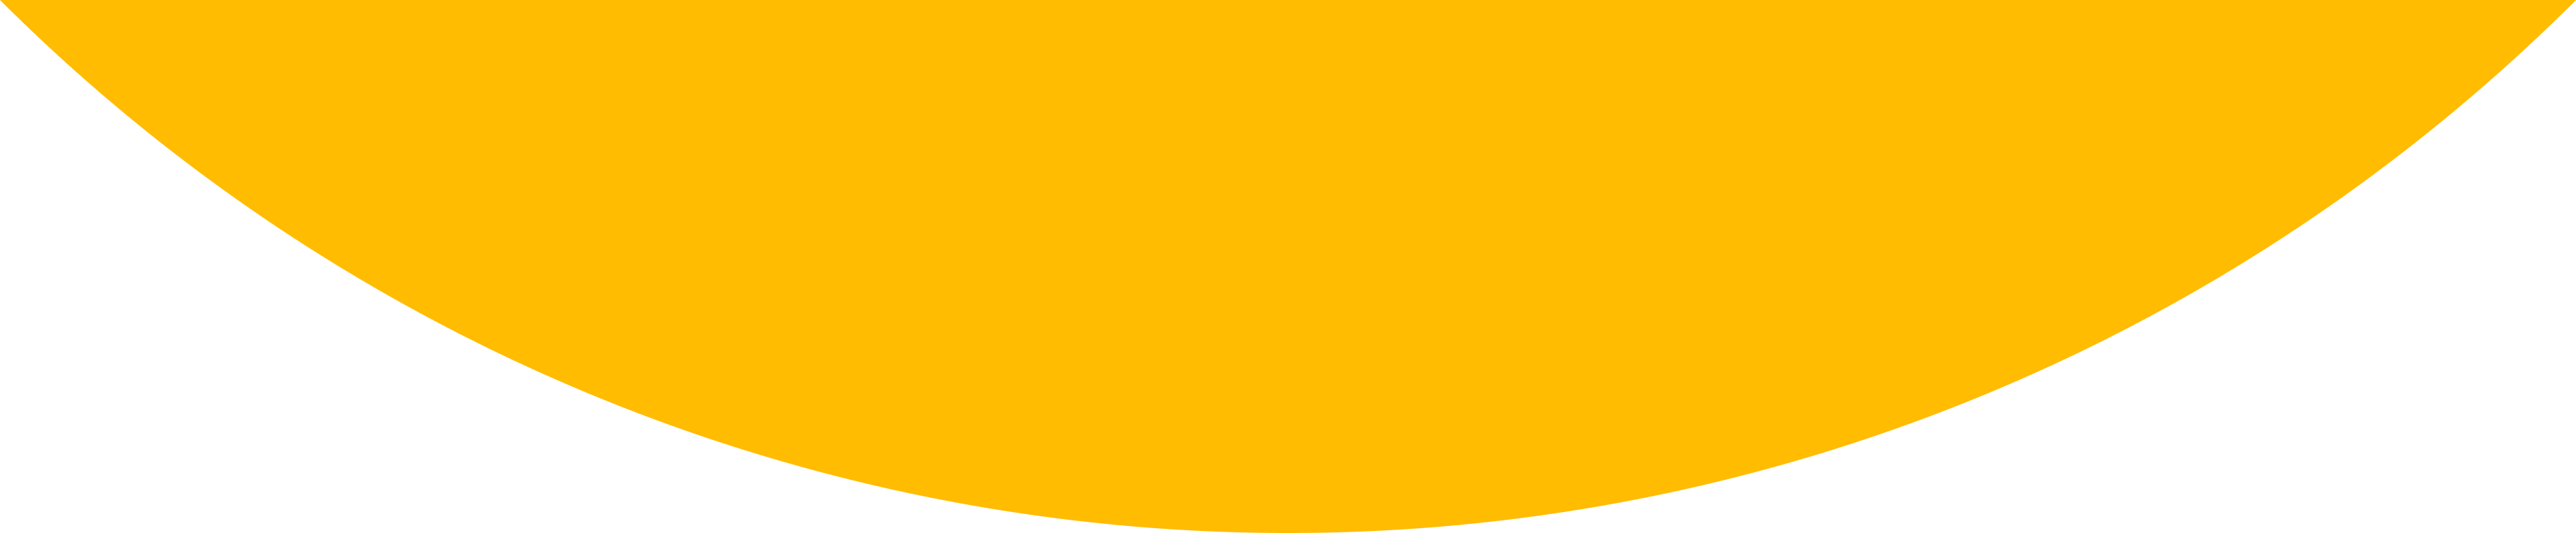 omniva yellow